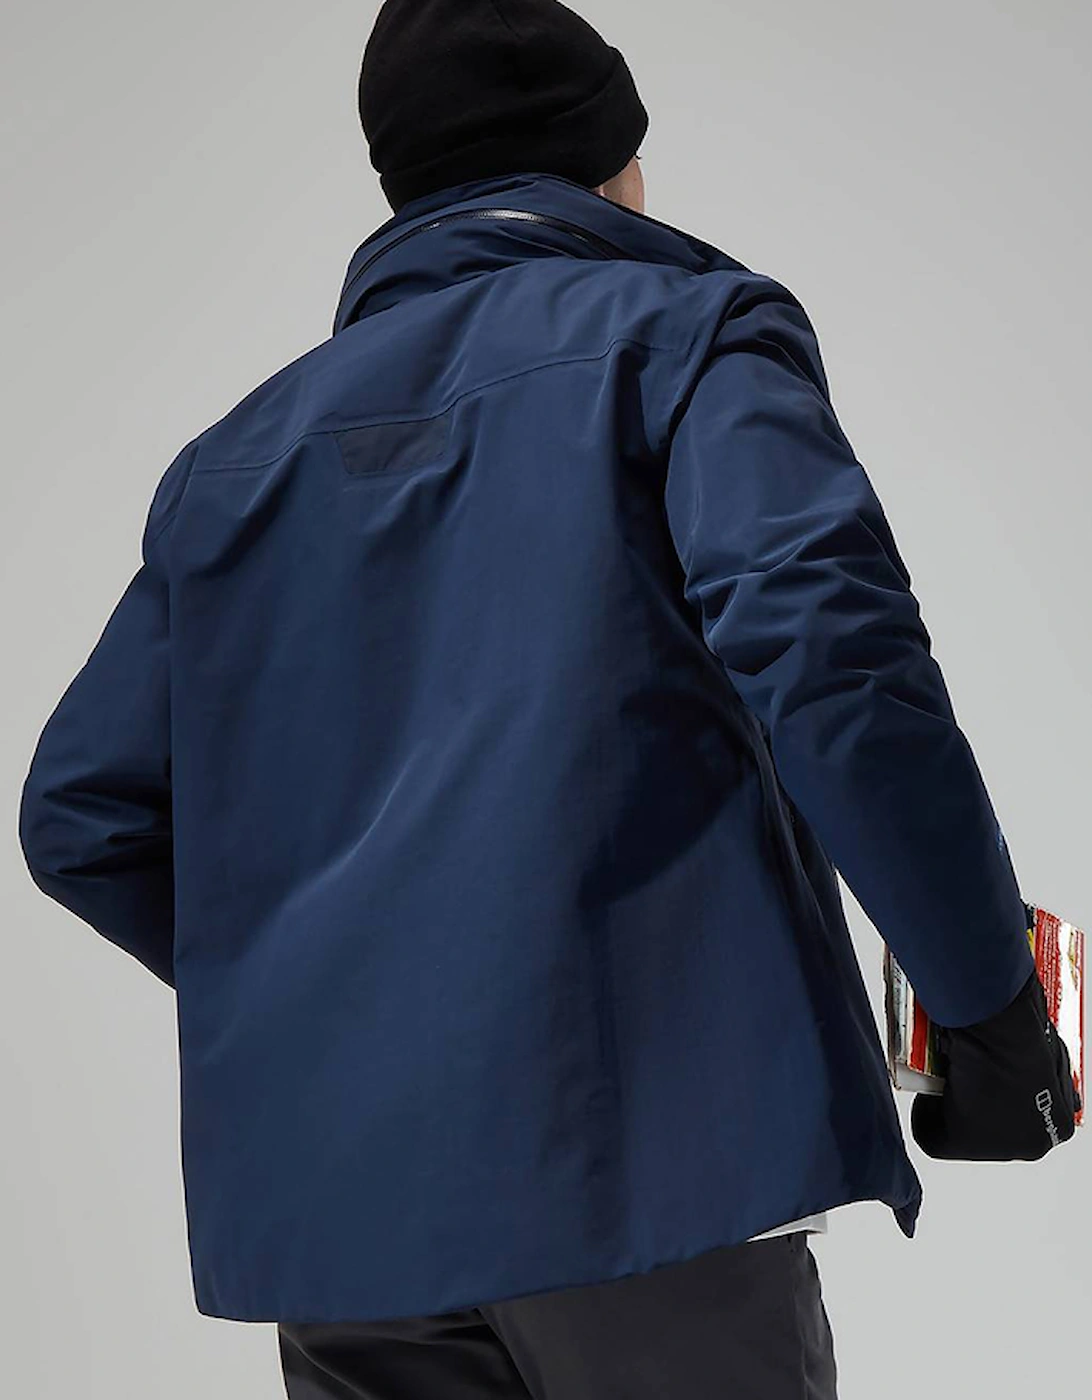 Men's Helmor Utility Jacket